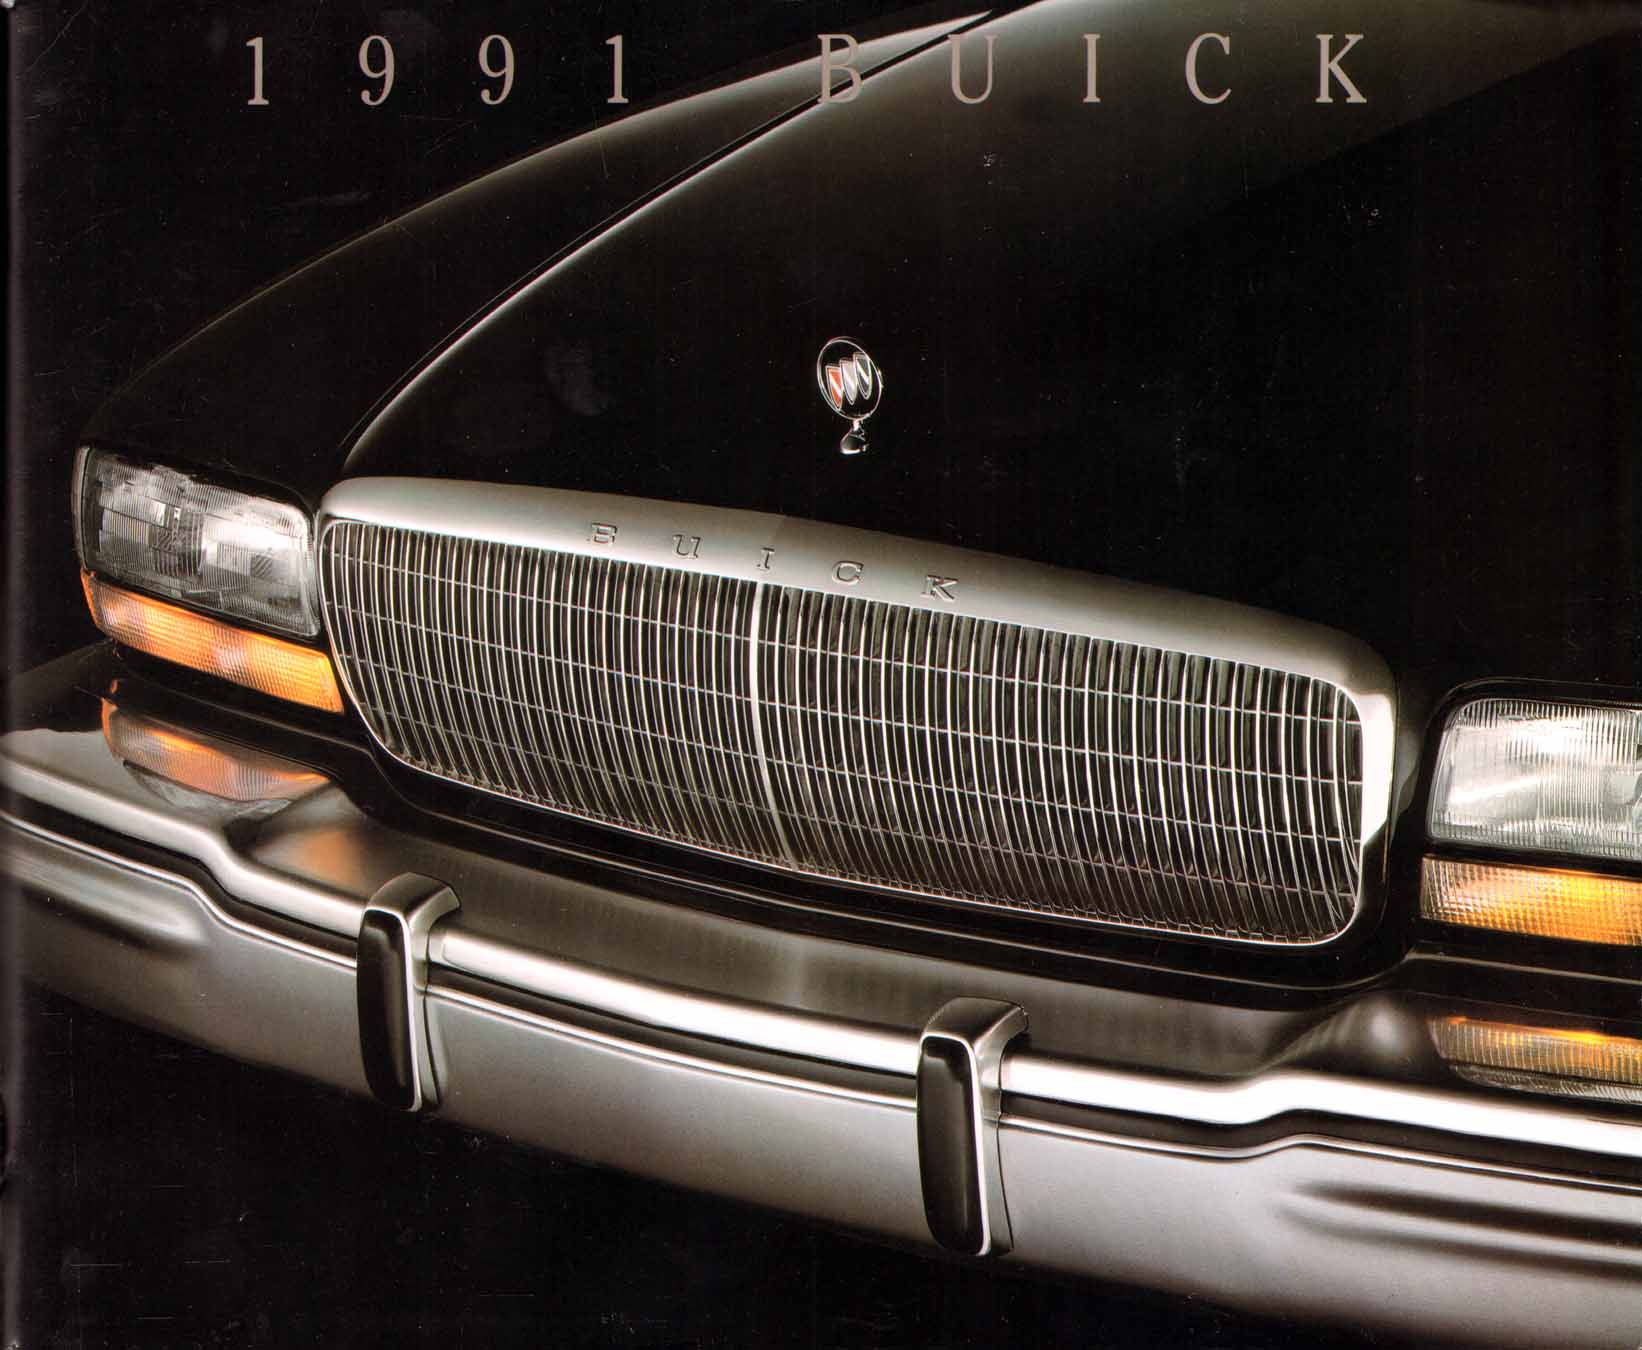 1991 Buick Full Line Prestige-01